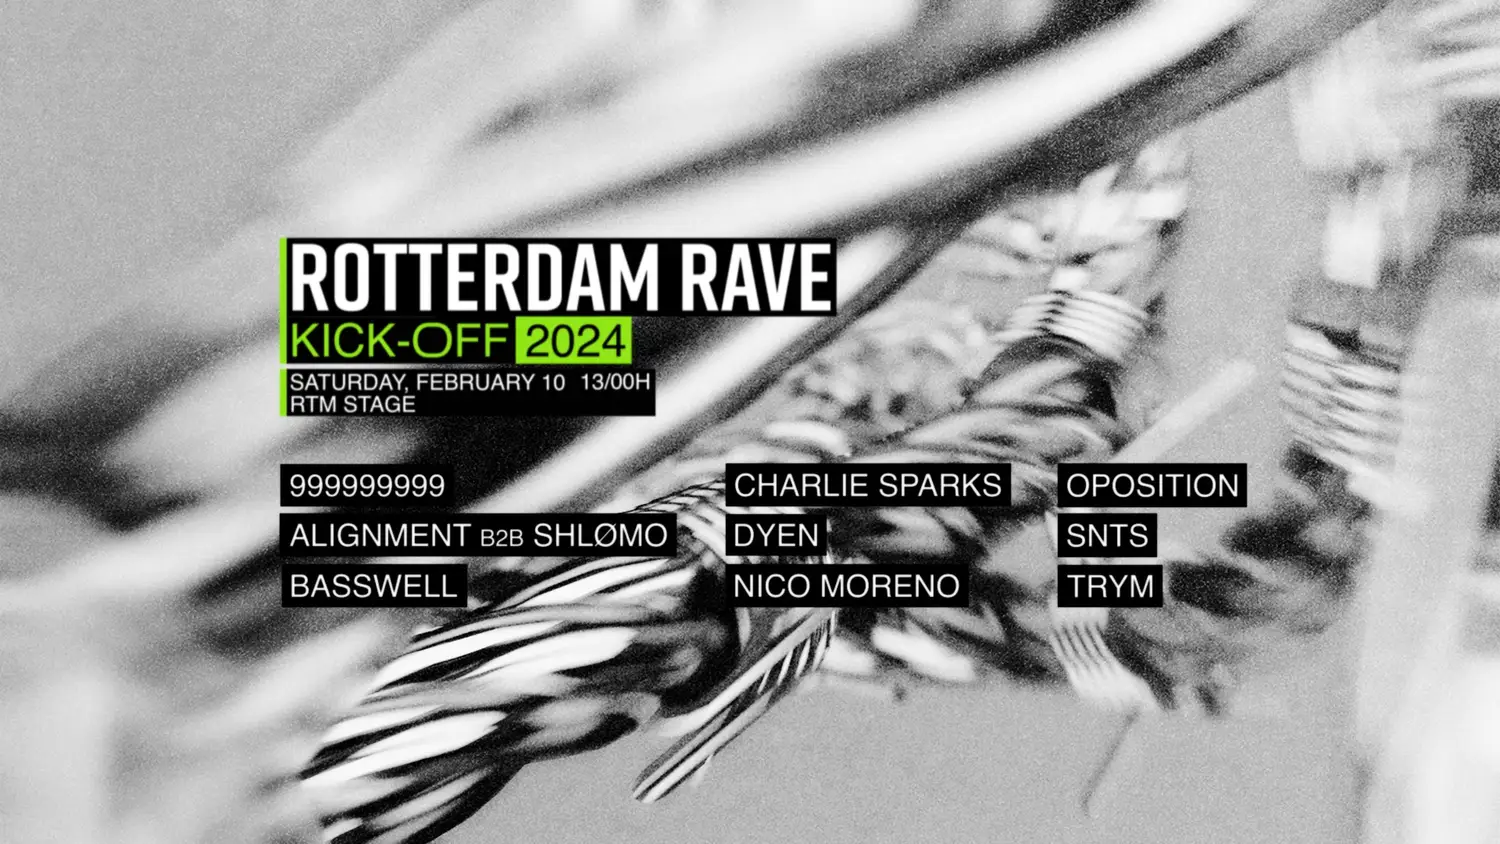 Rotterdam Rave 'Kick-Off' 2024 - Saturday